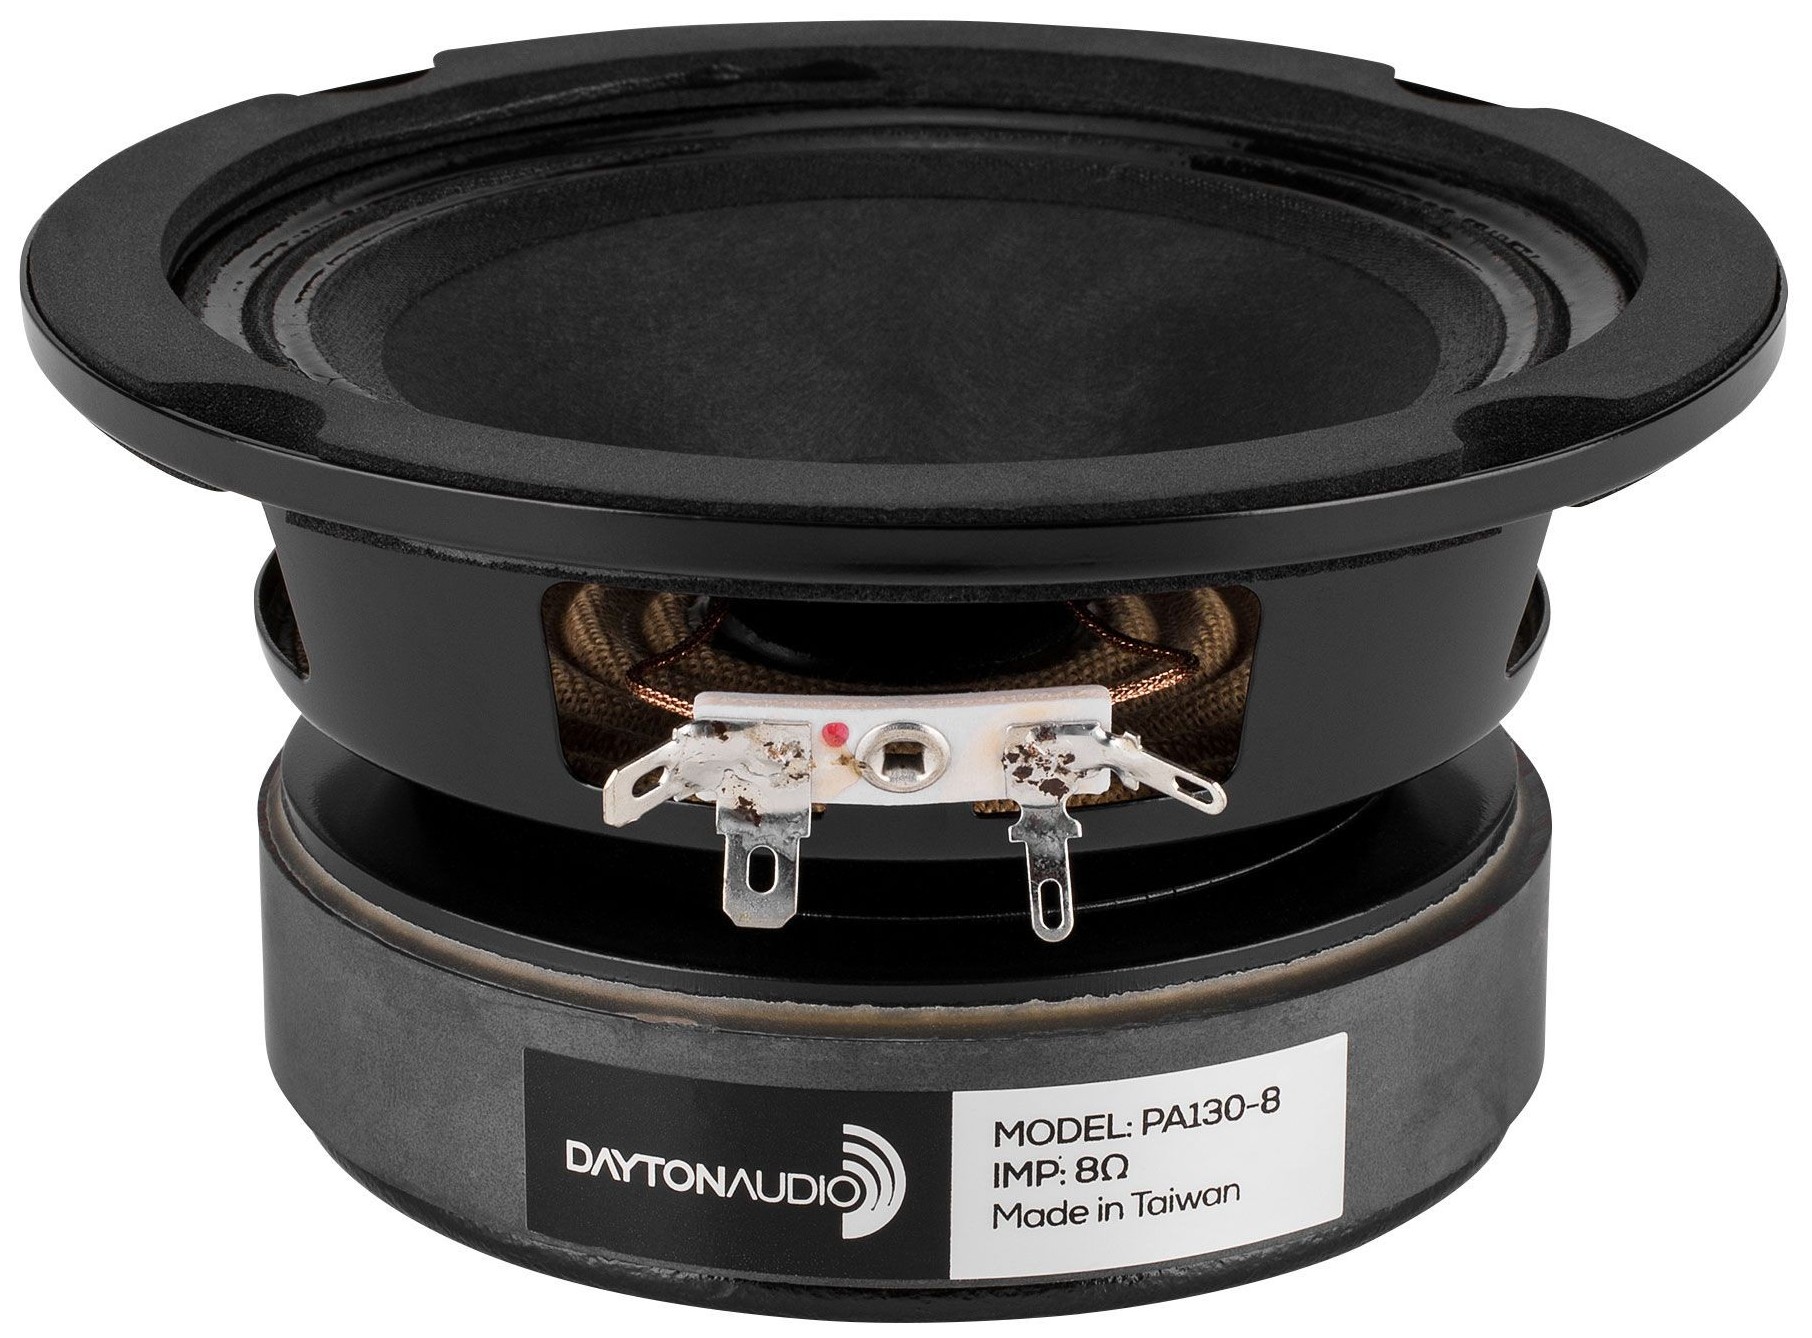 Dayton Audio PA130-8 Full-range